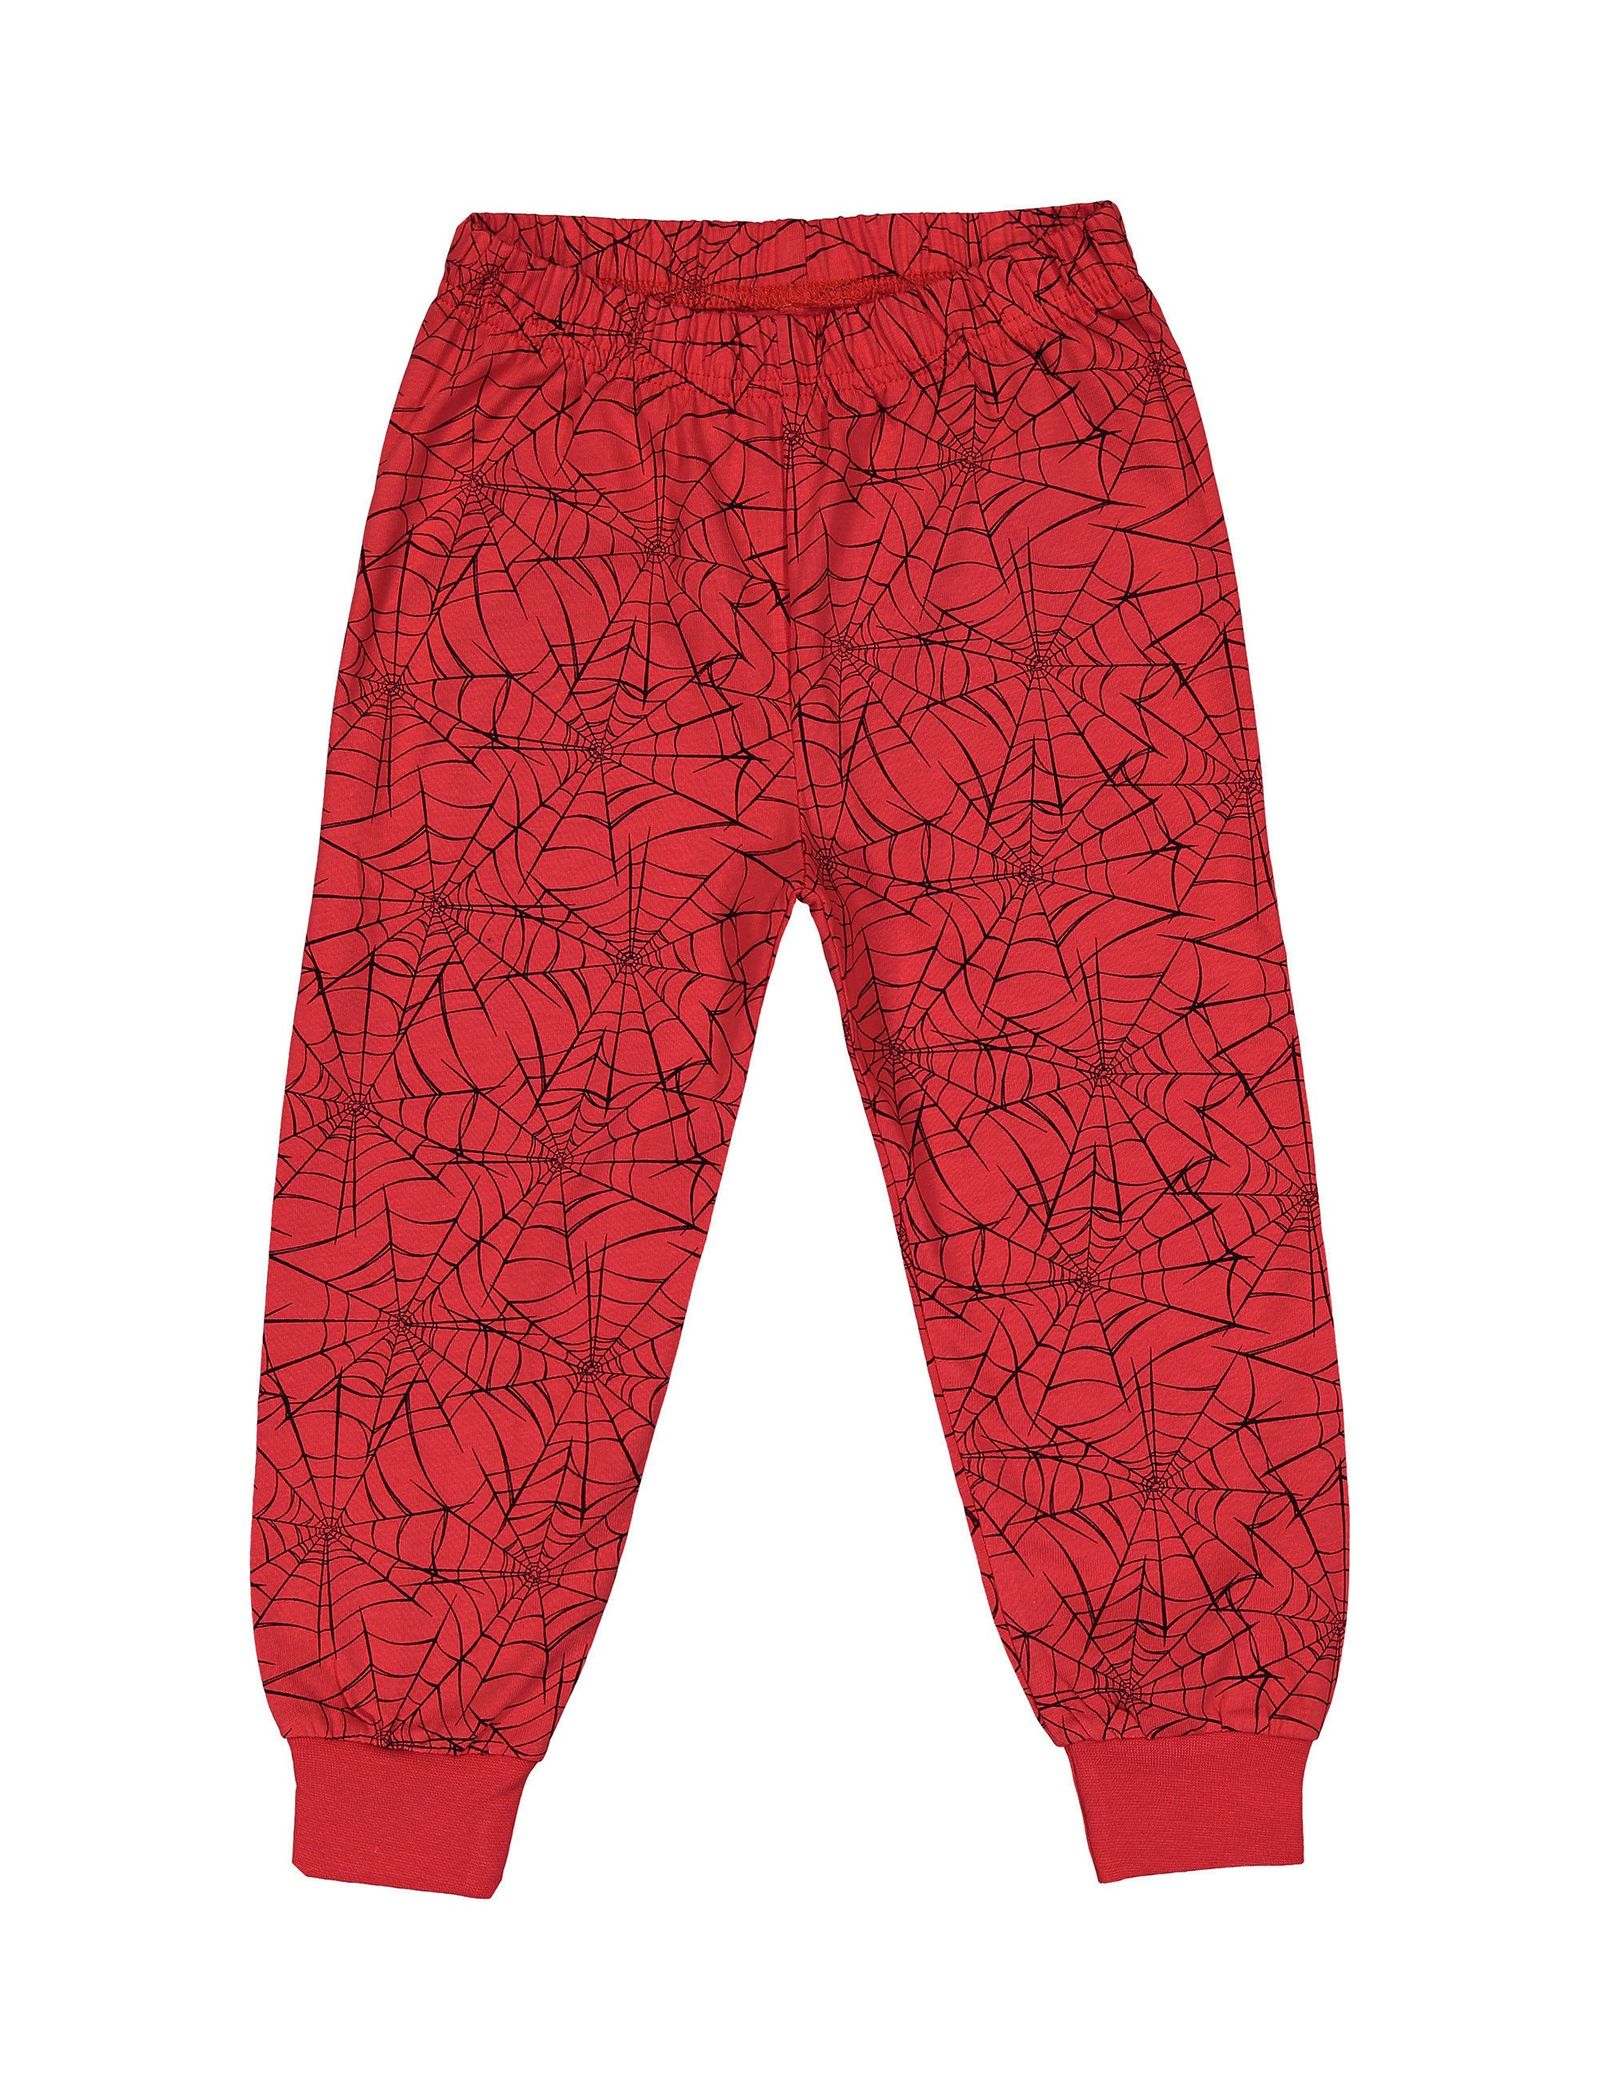 تی شرت و شلوار راحتی نخی پسرانه - دبنهامز - قرمز و ط.وسي - 5